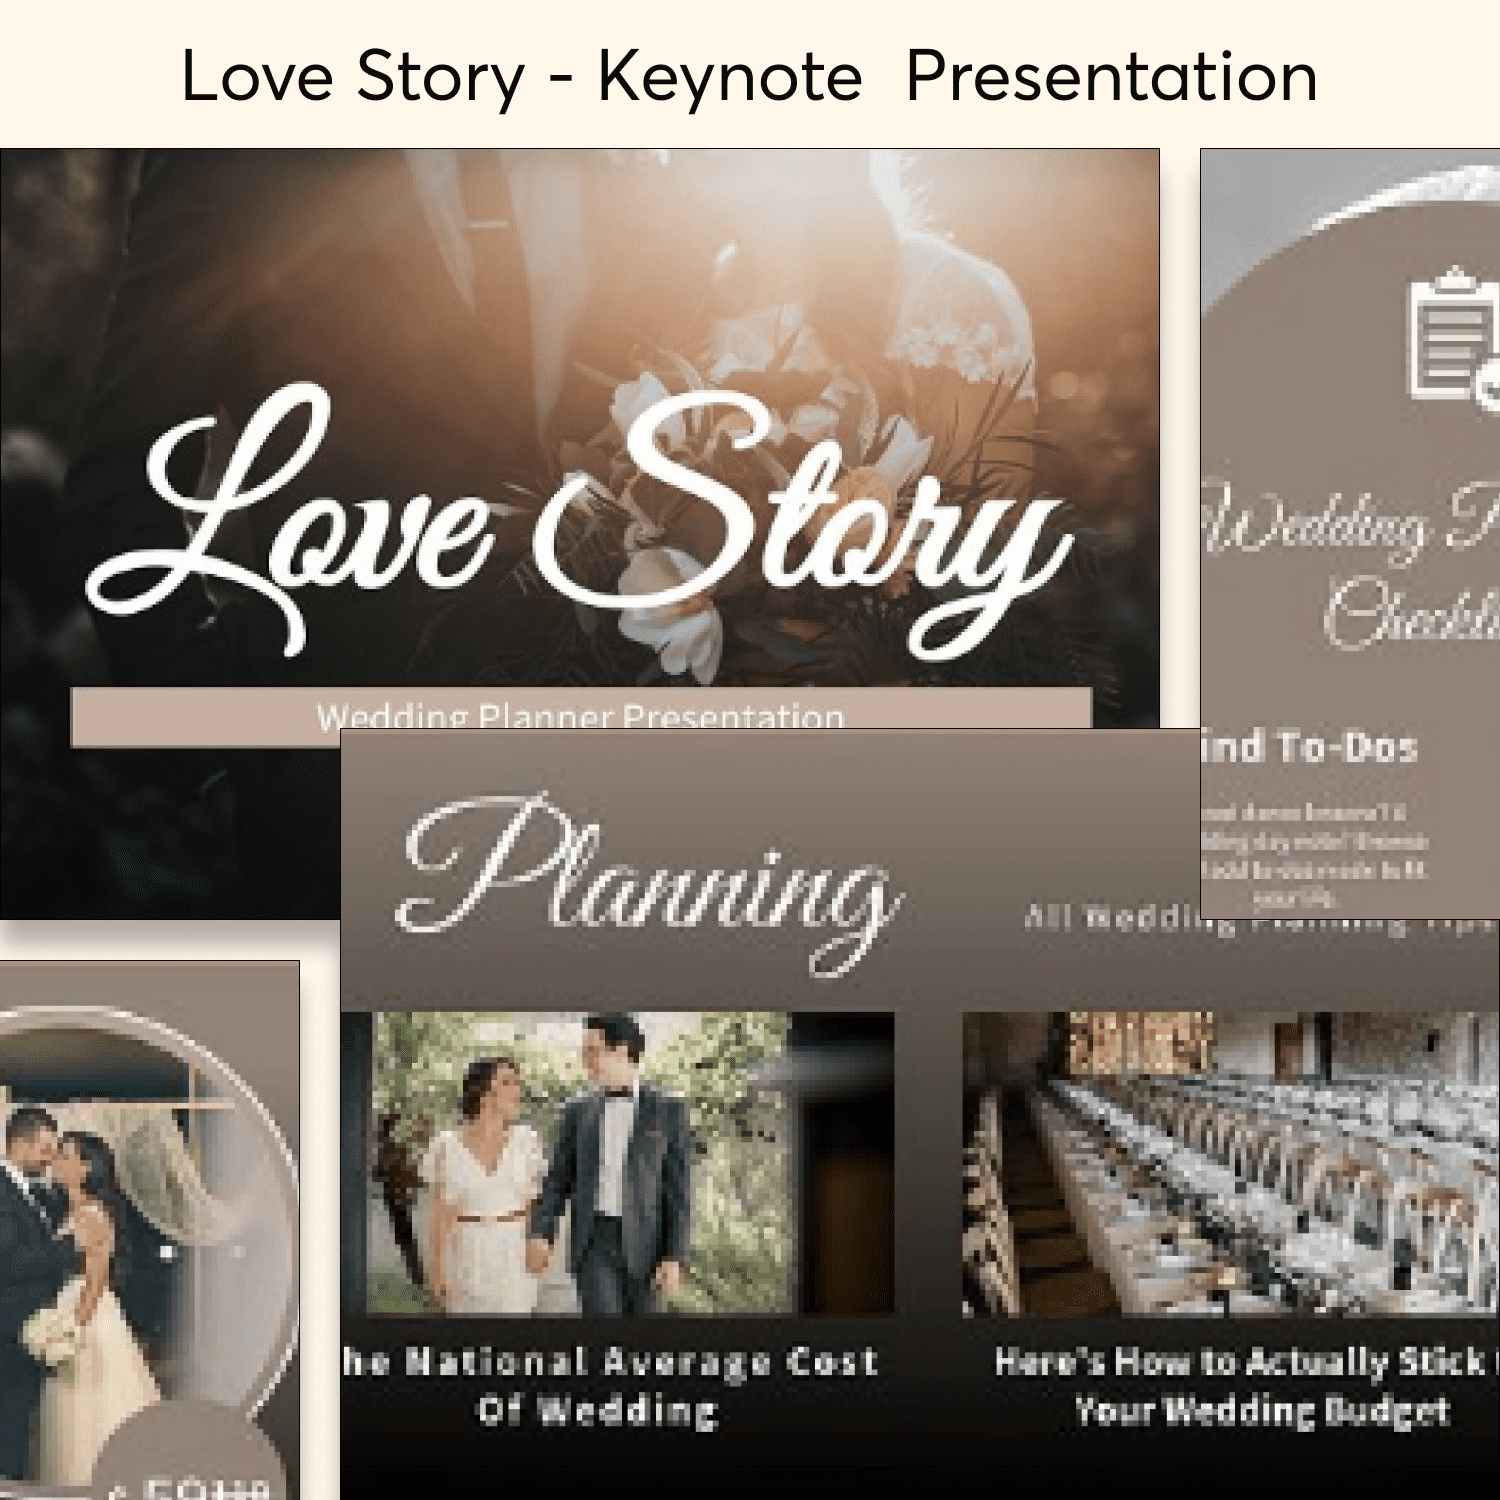 Love Story - Keynote Presentation cover.